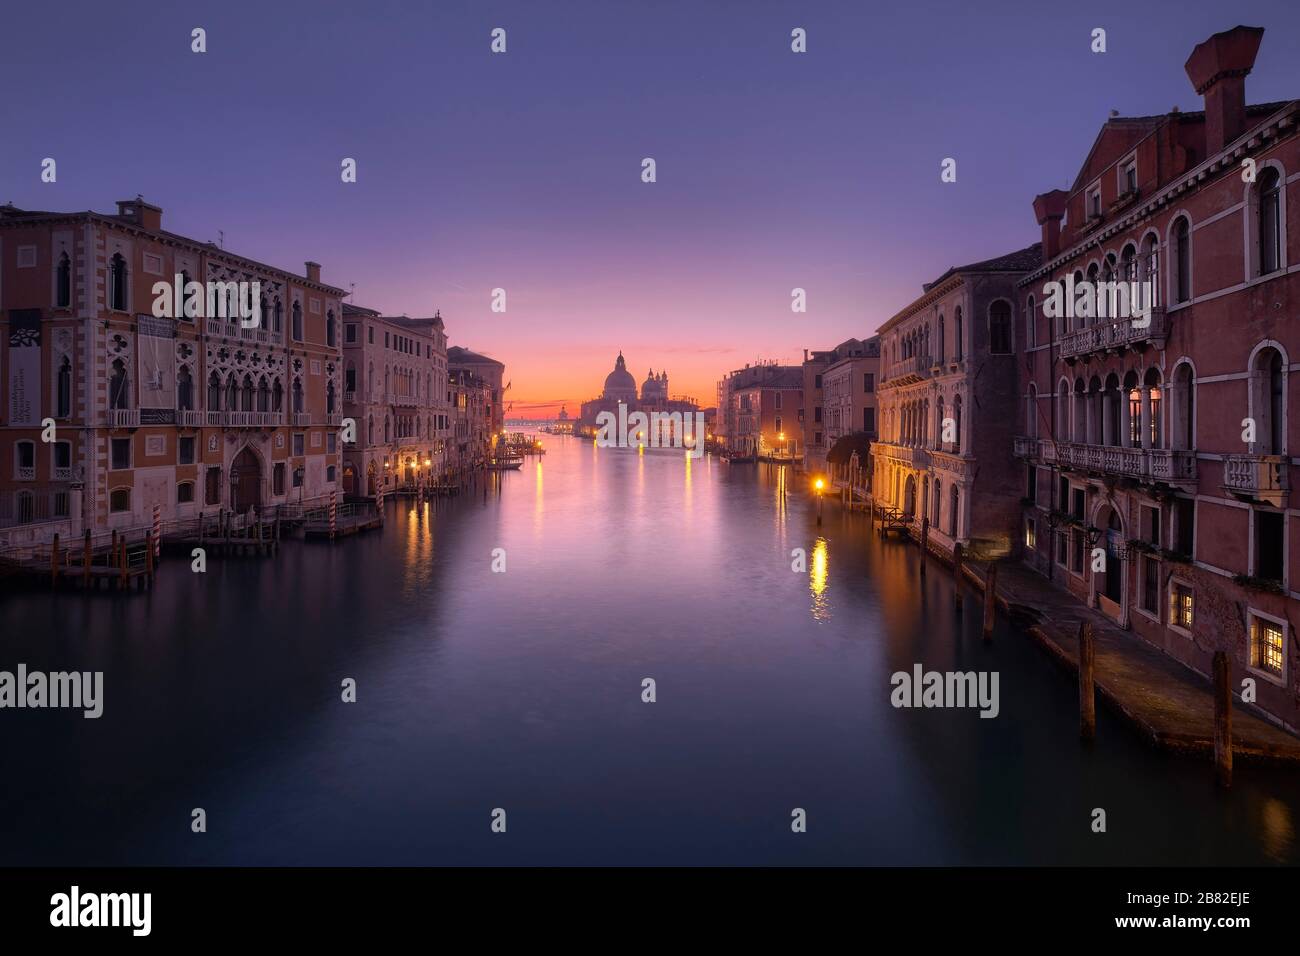 Ponte dell'Accademia in Venice (Italy) Stock Photo